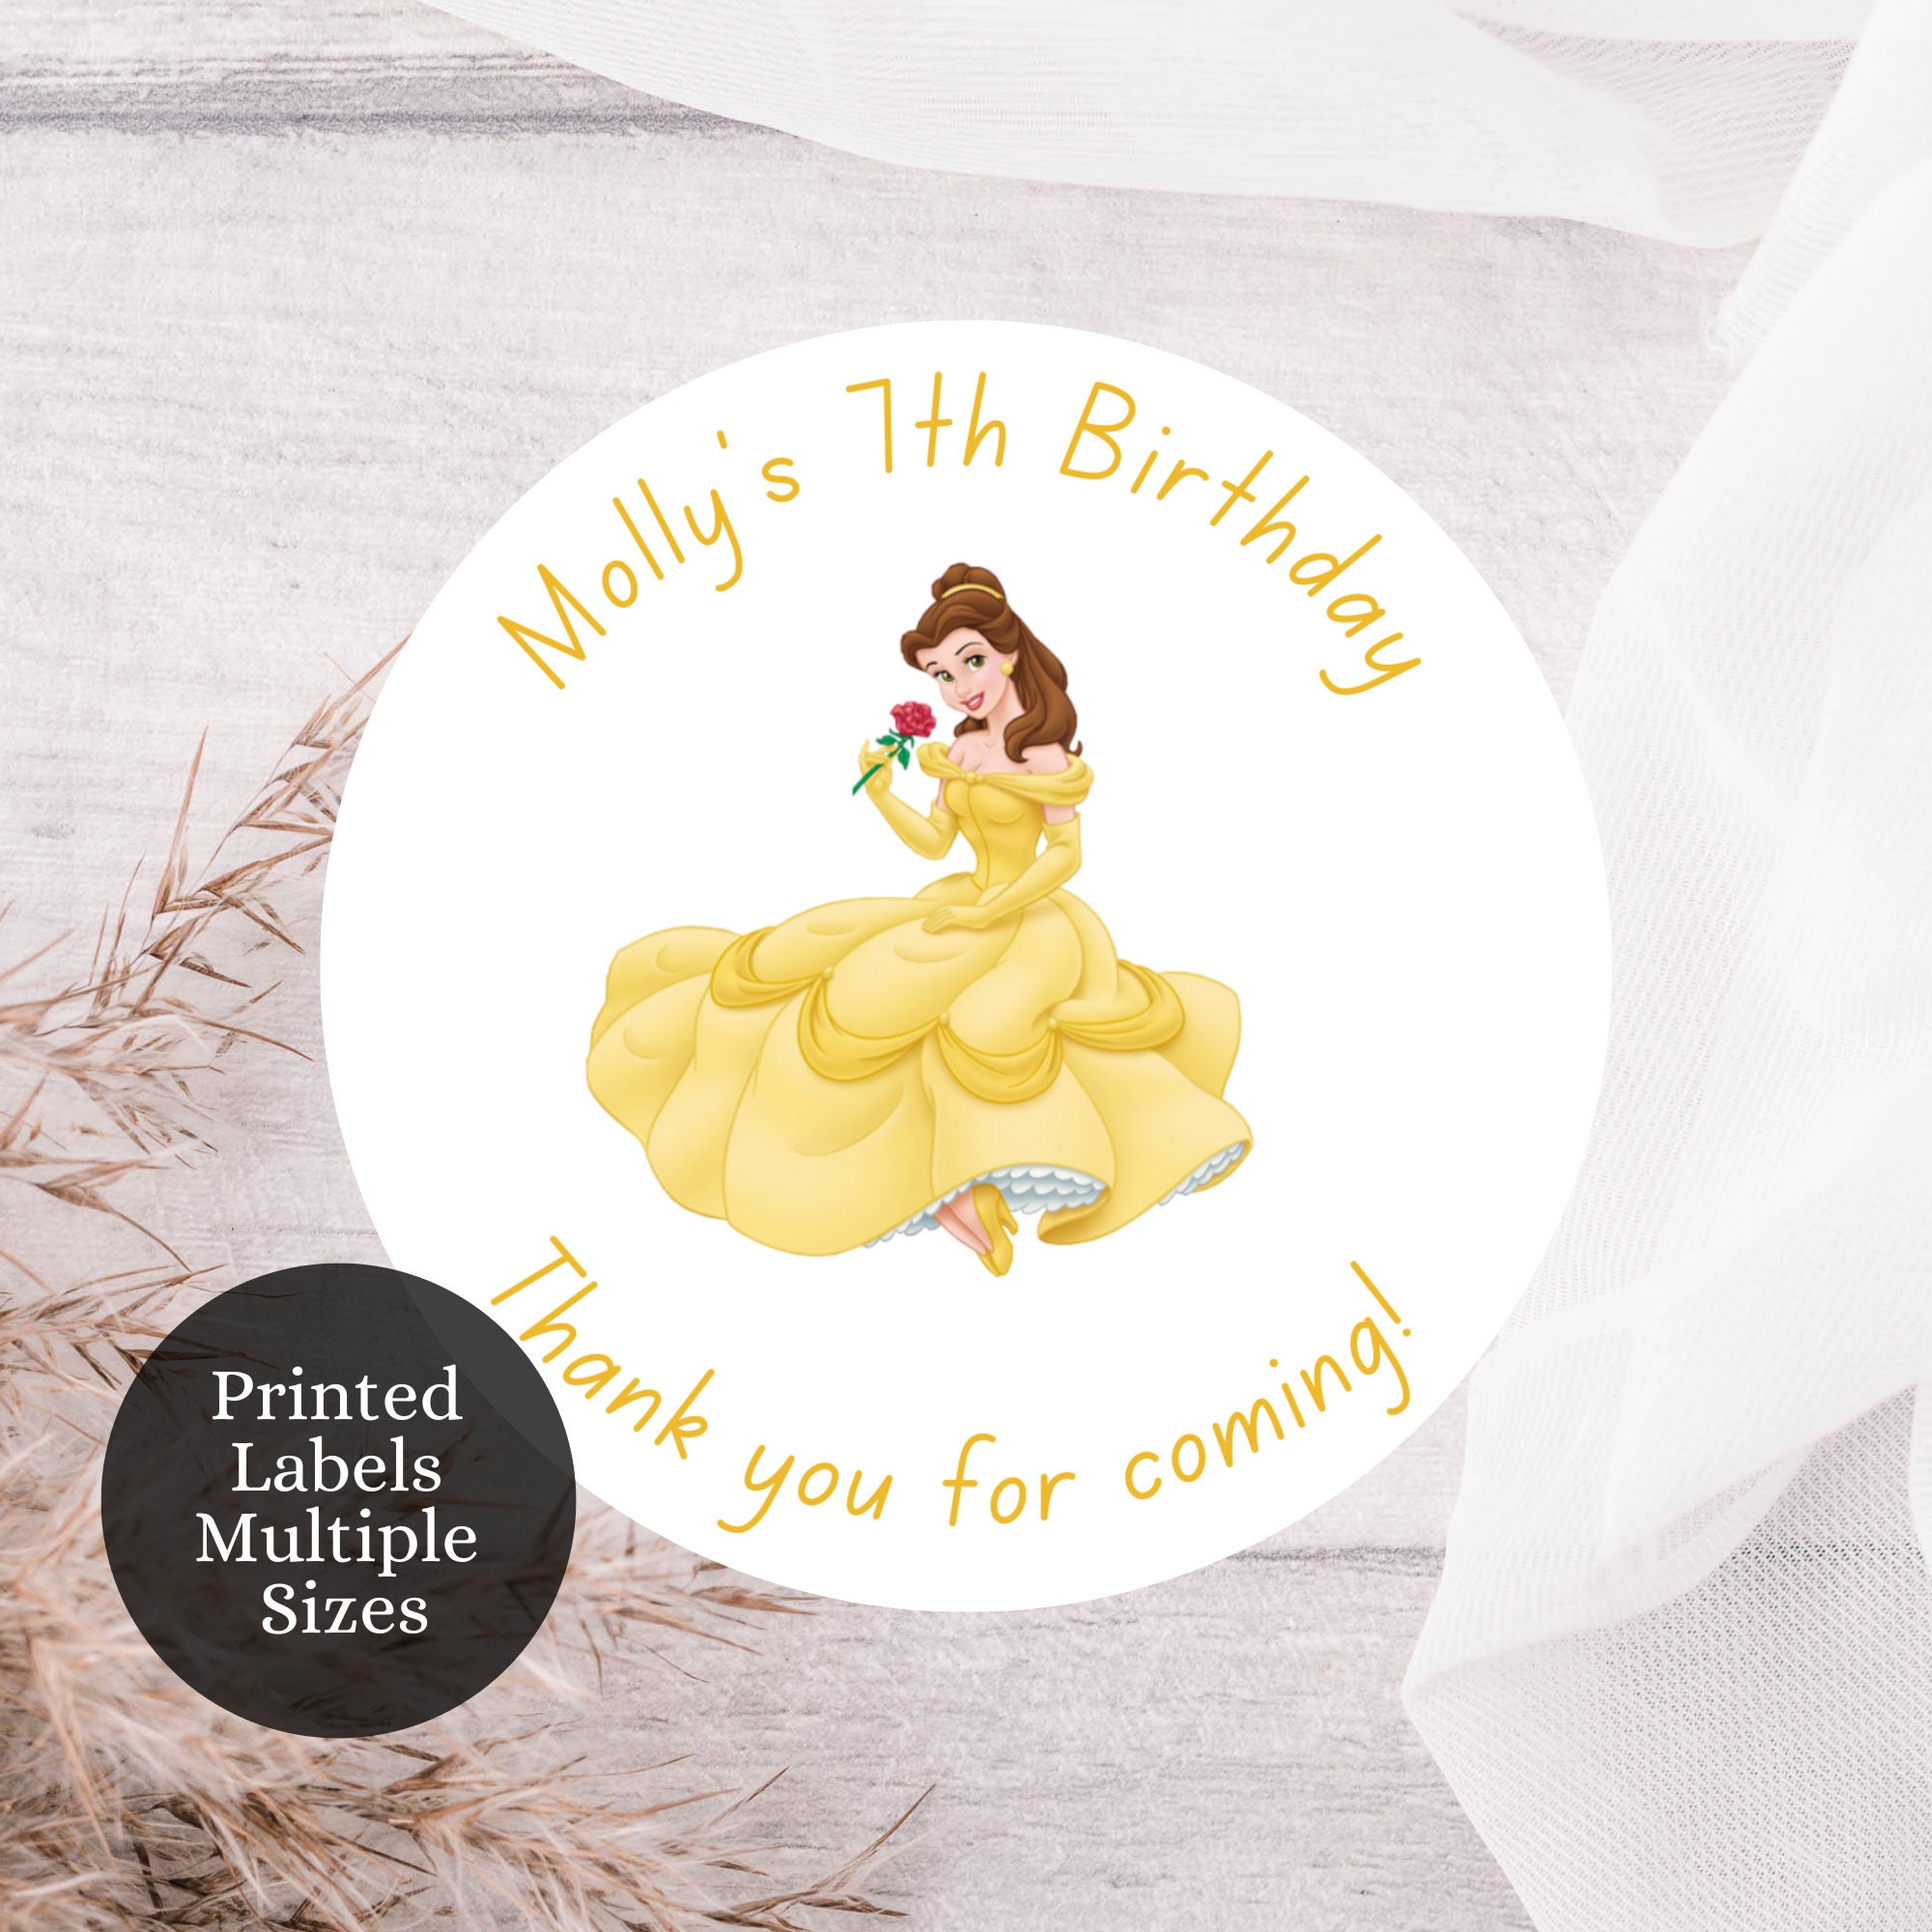 12 pegatinas personalizadas para fiesta de cumpleaños de princesa belle,  caja de regalo